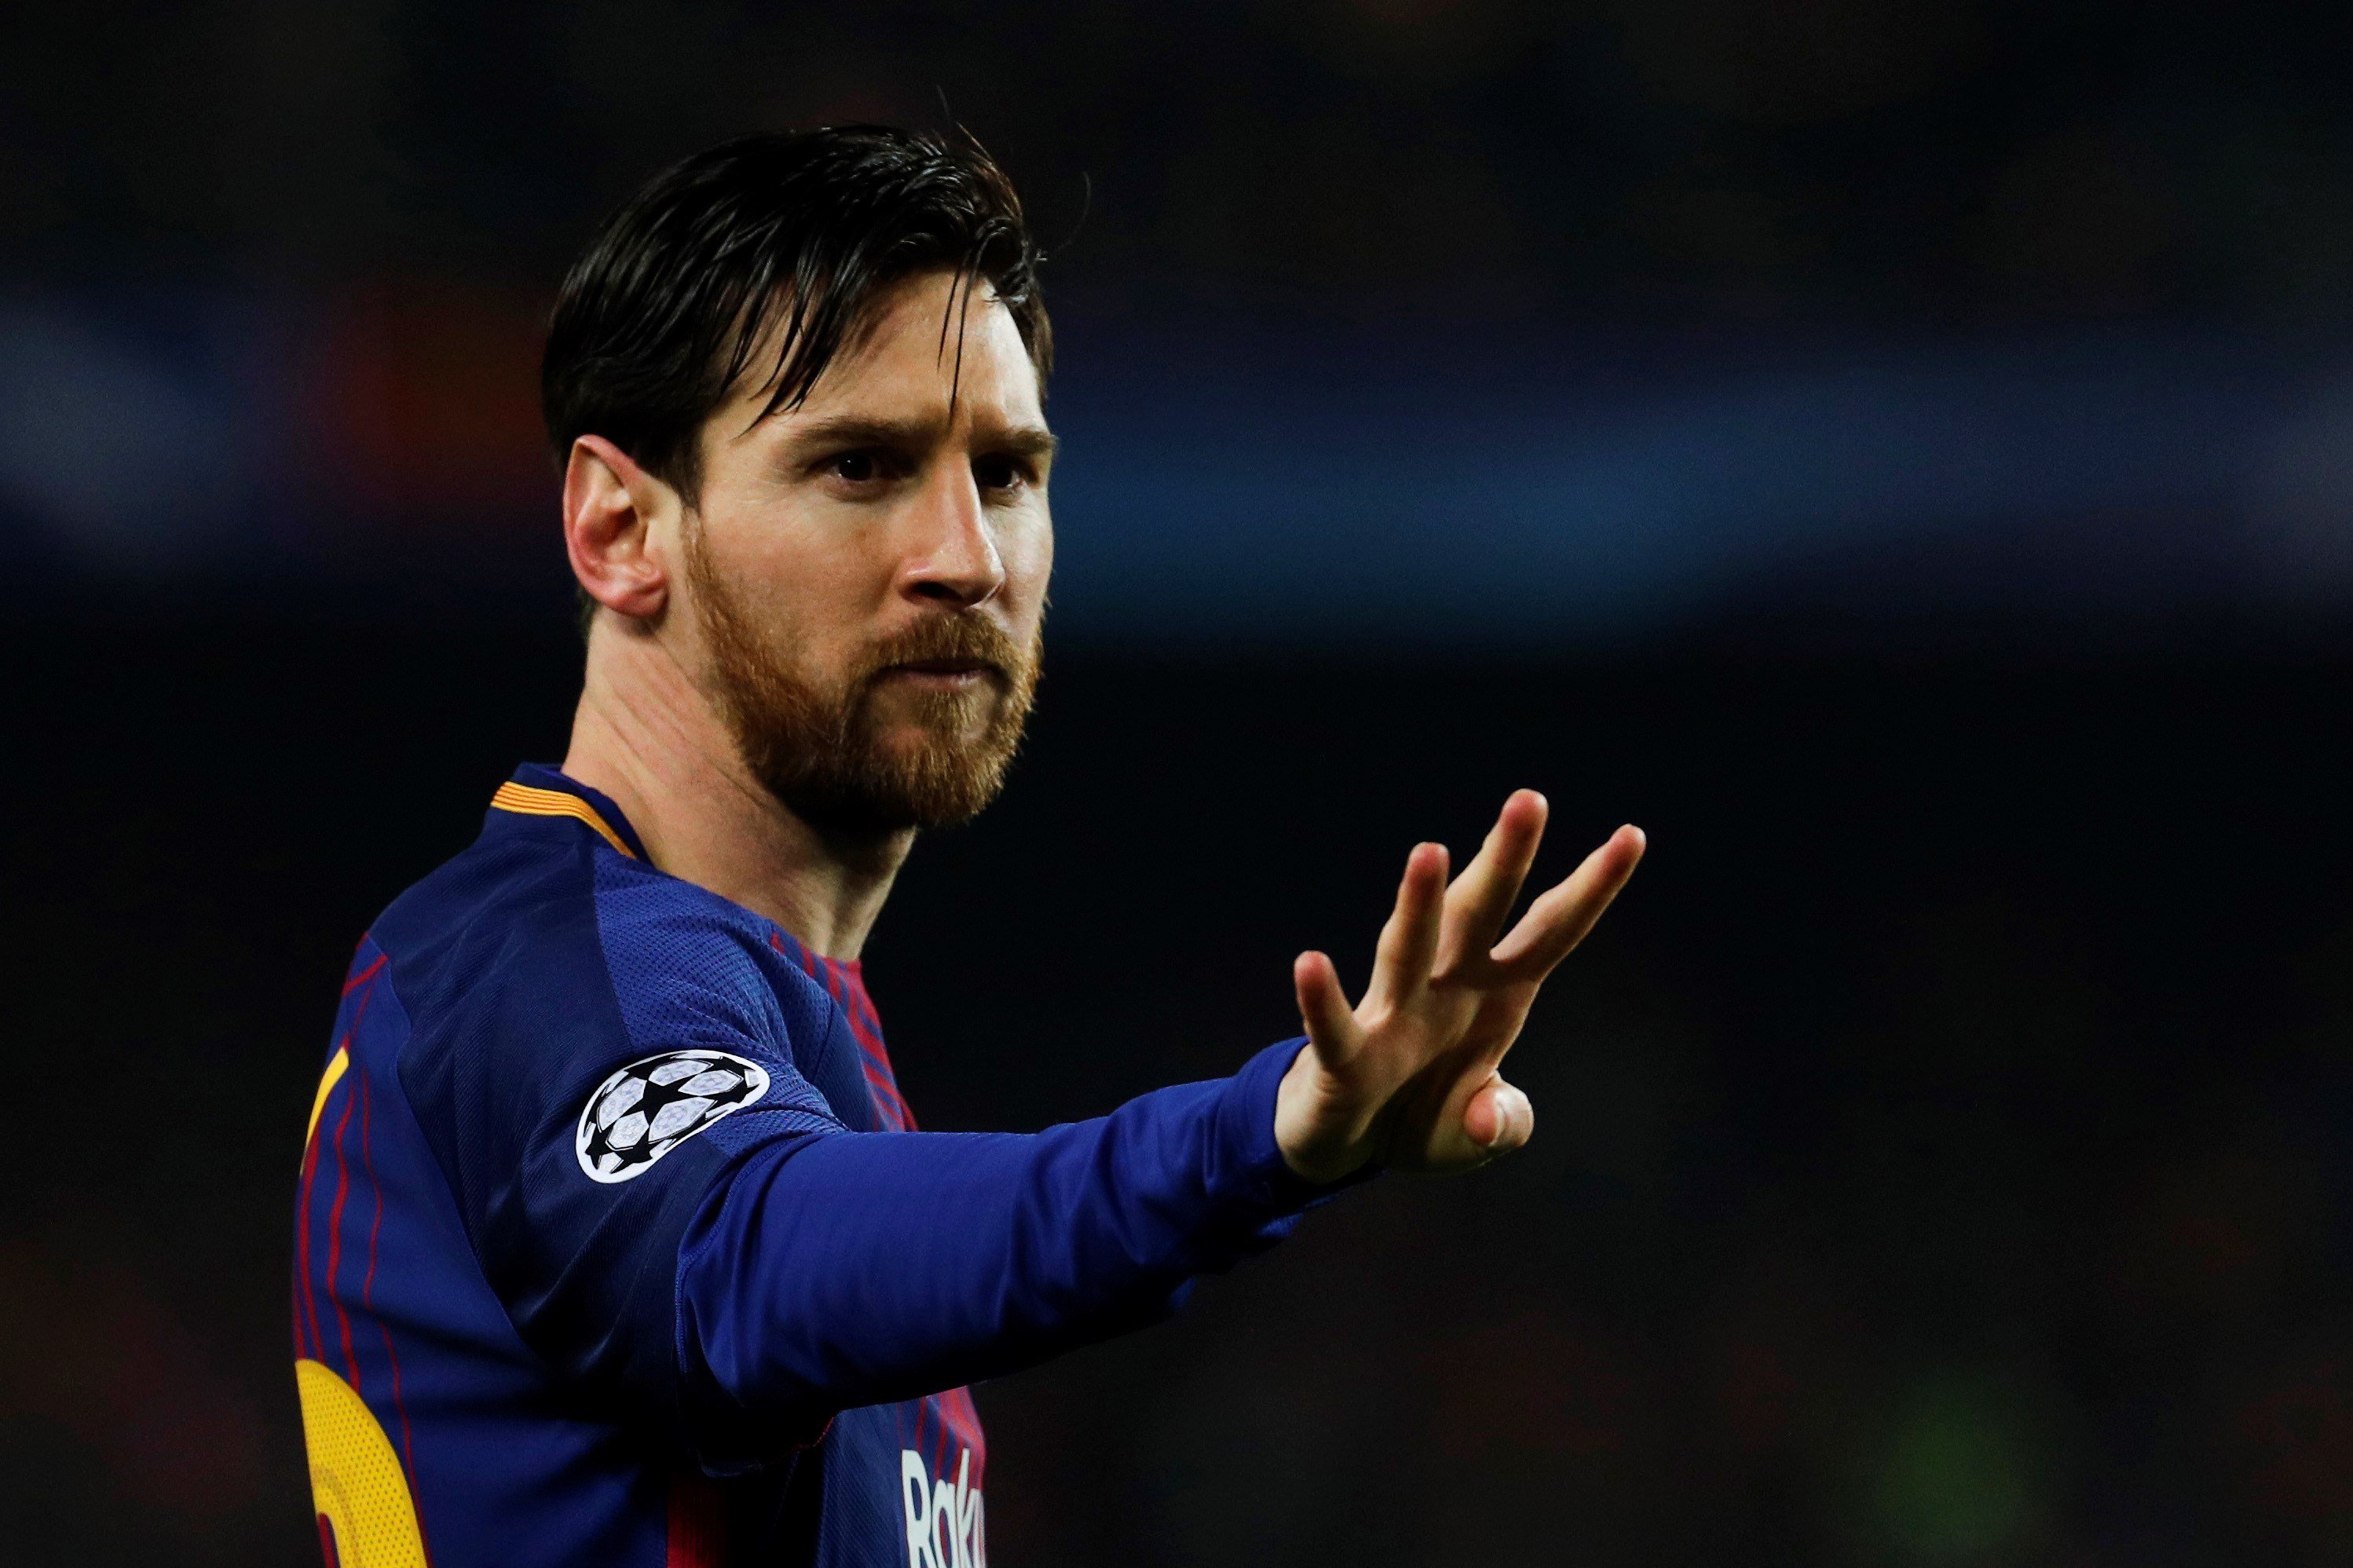 El Chelsea quiere fichar a Messi: tiene dinero y un proyecto ilusionante